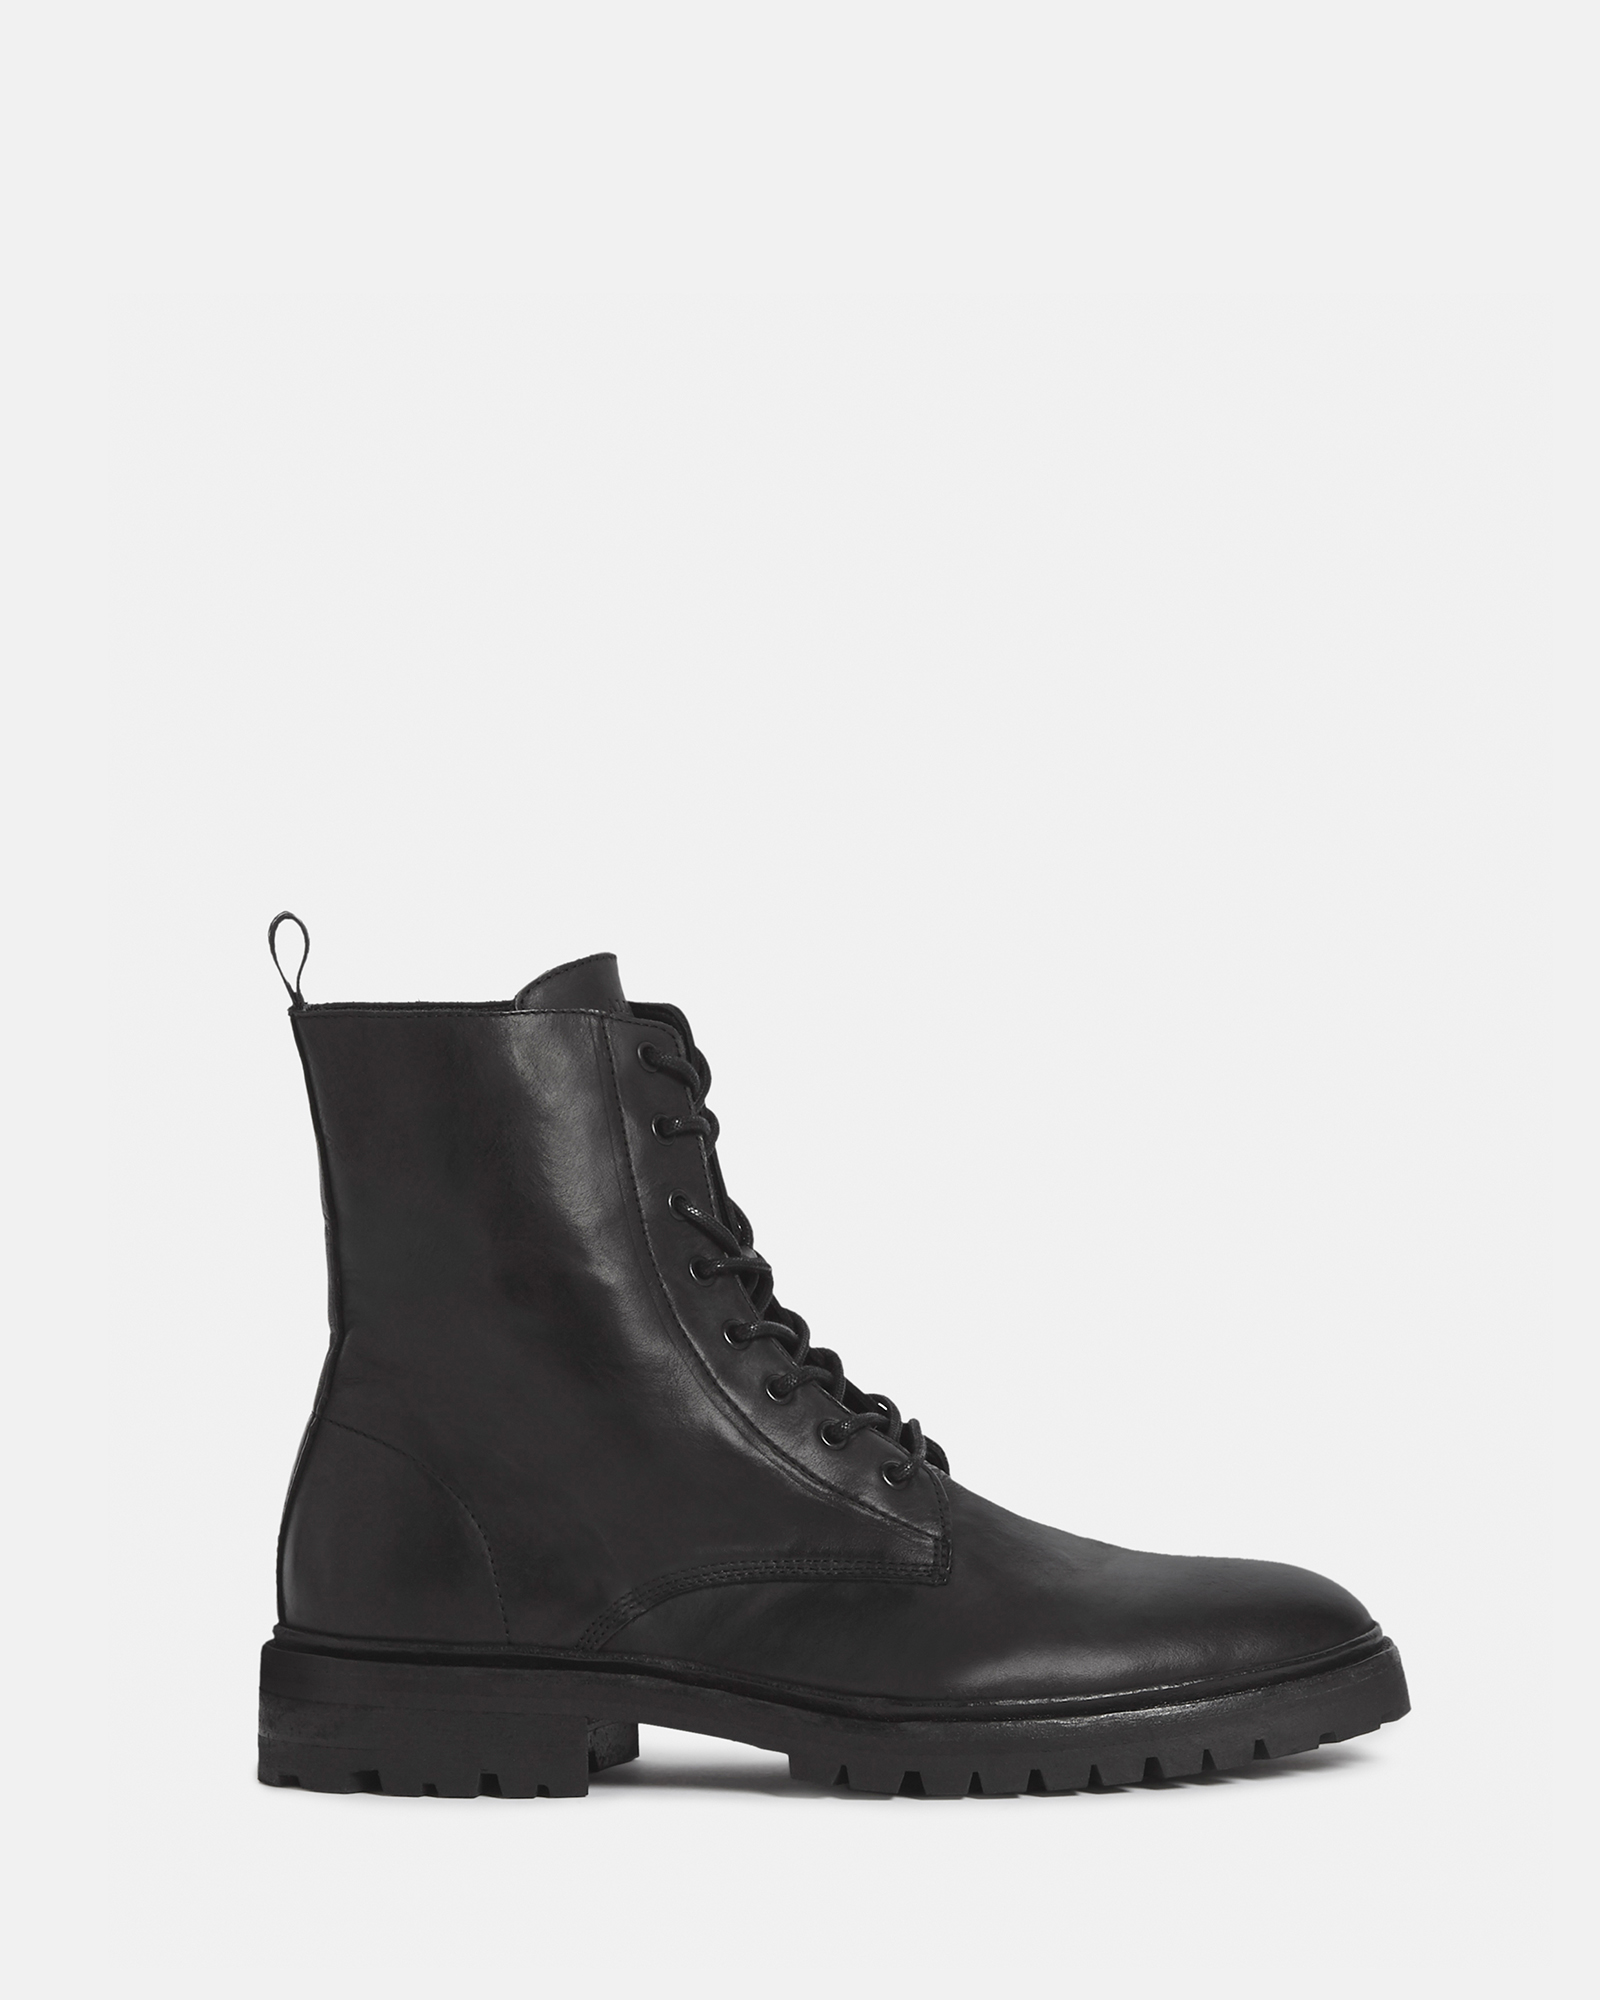 AllSaints Men's Tobias Boots, Black